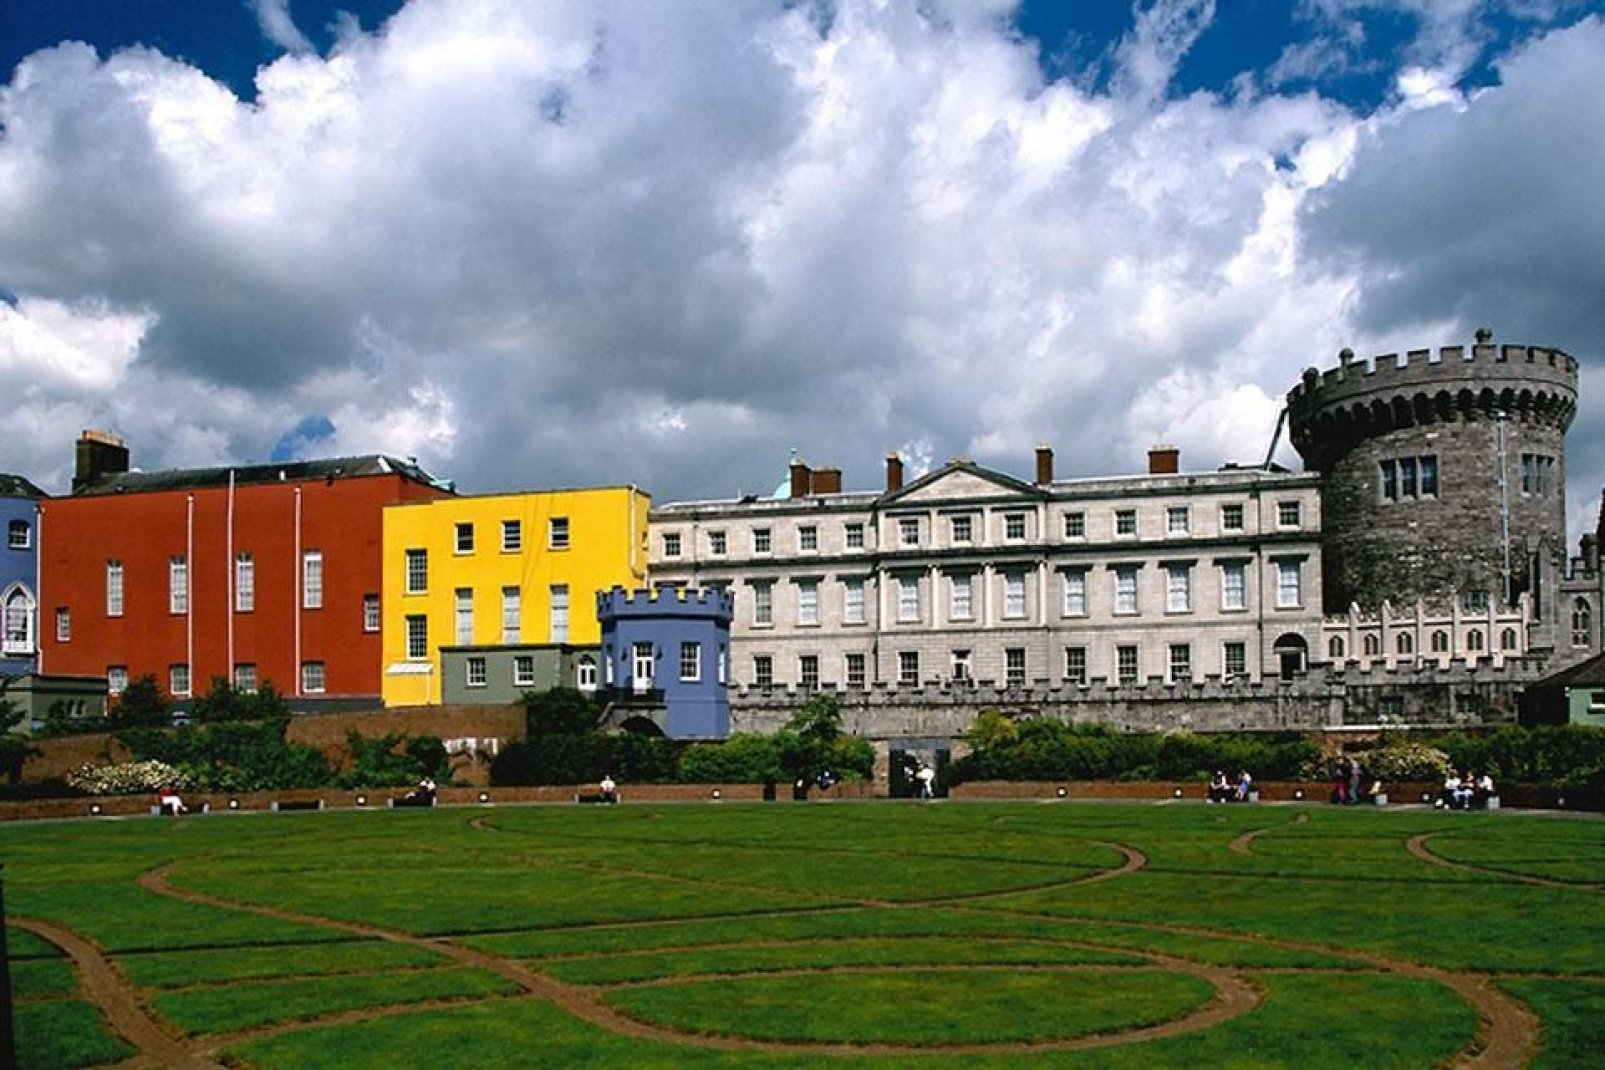 Le château de Dublin, bordé de constructions récentes colorées, domine un magnifique jardin très soigné